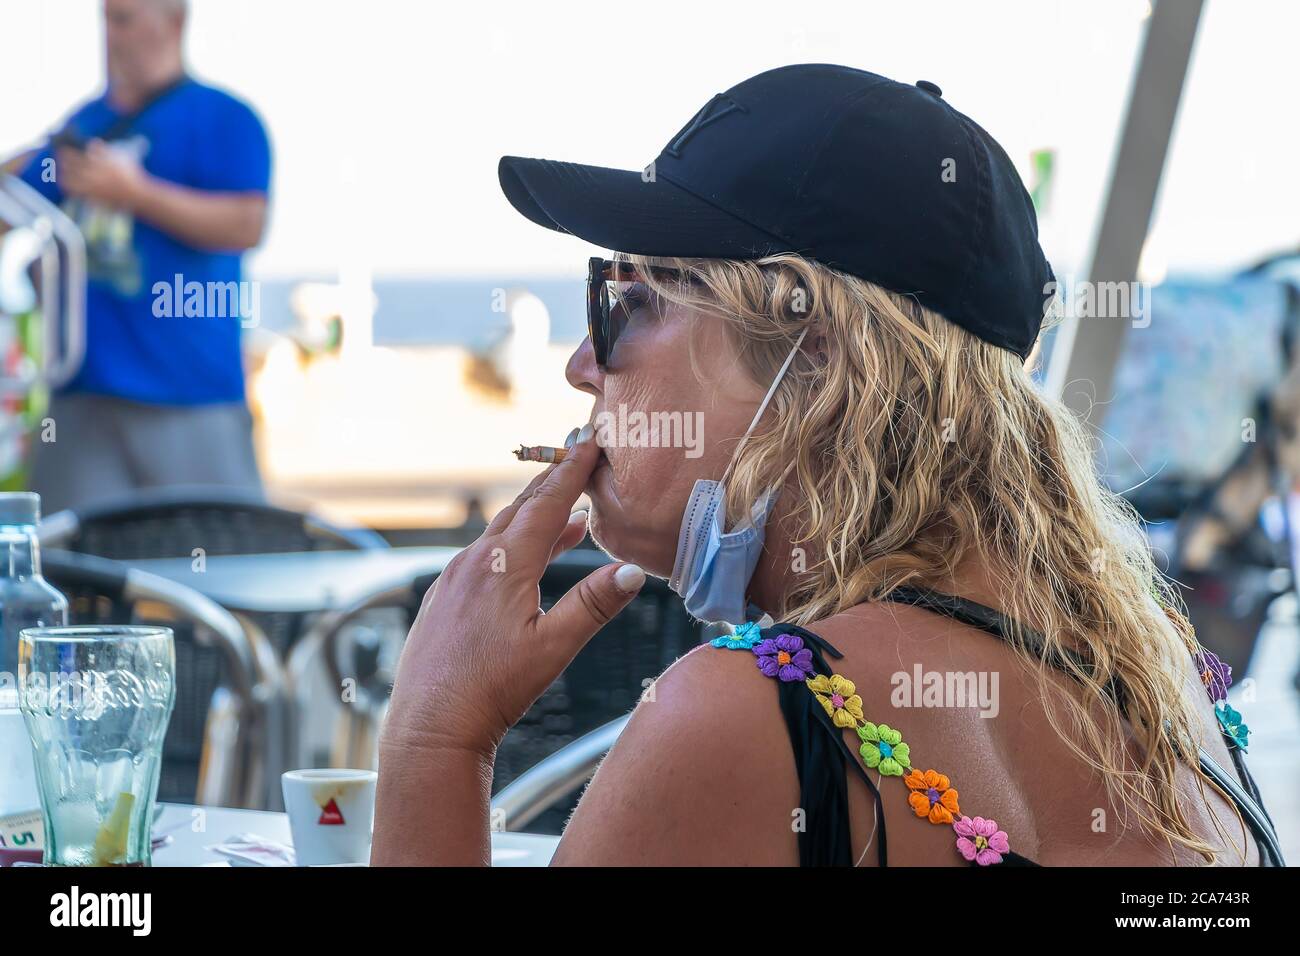 Huelva, Spagna - 10 luglio 2020: Donna bionda matura che indossa la maschera facciale per evitare il coronavirus covid-19 è fumare una sigaretta in una terrazza bar Foto Stock